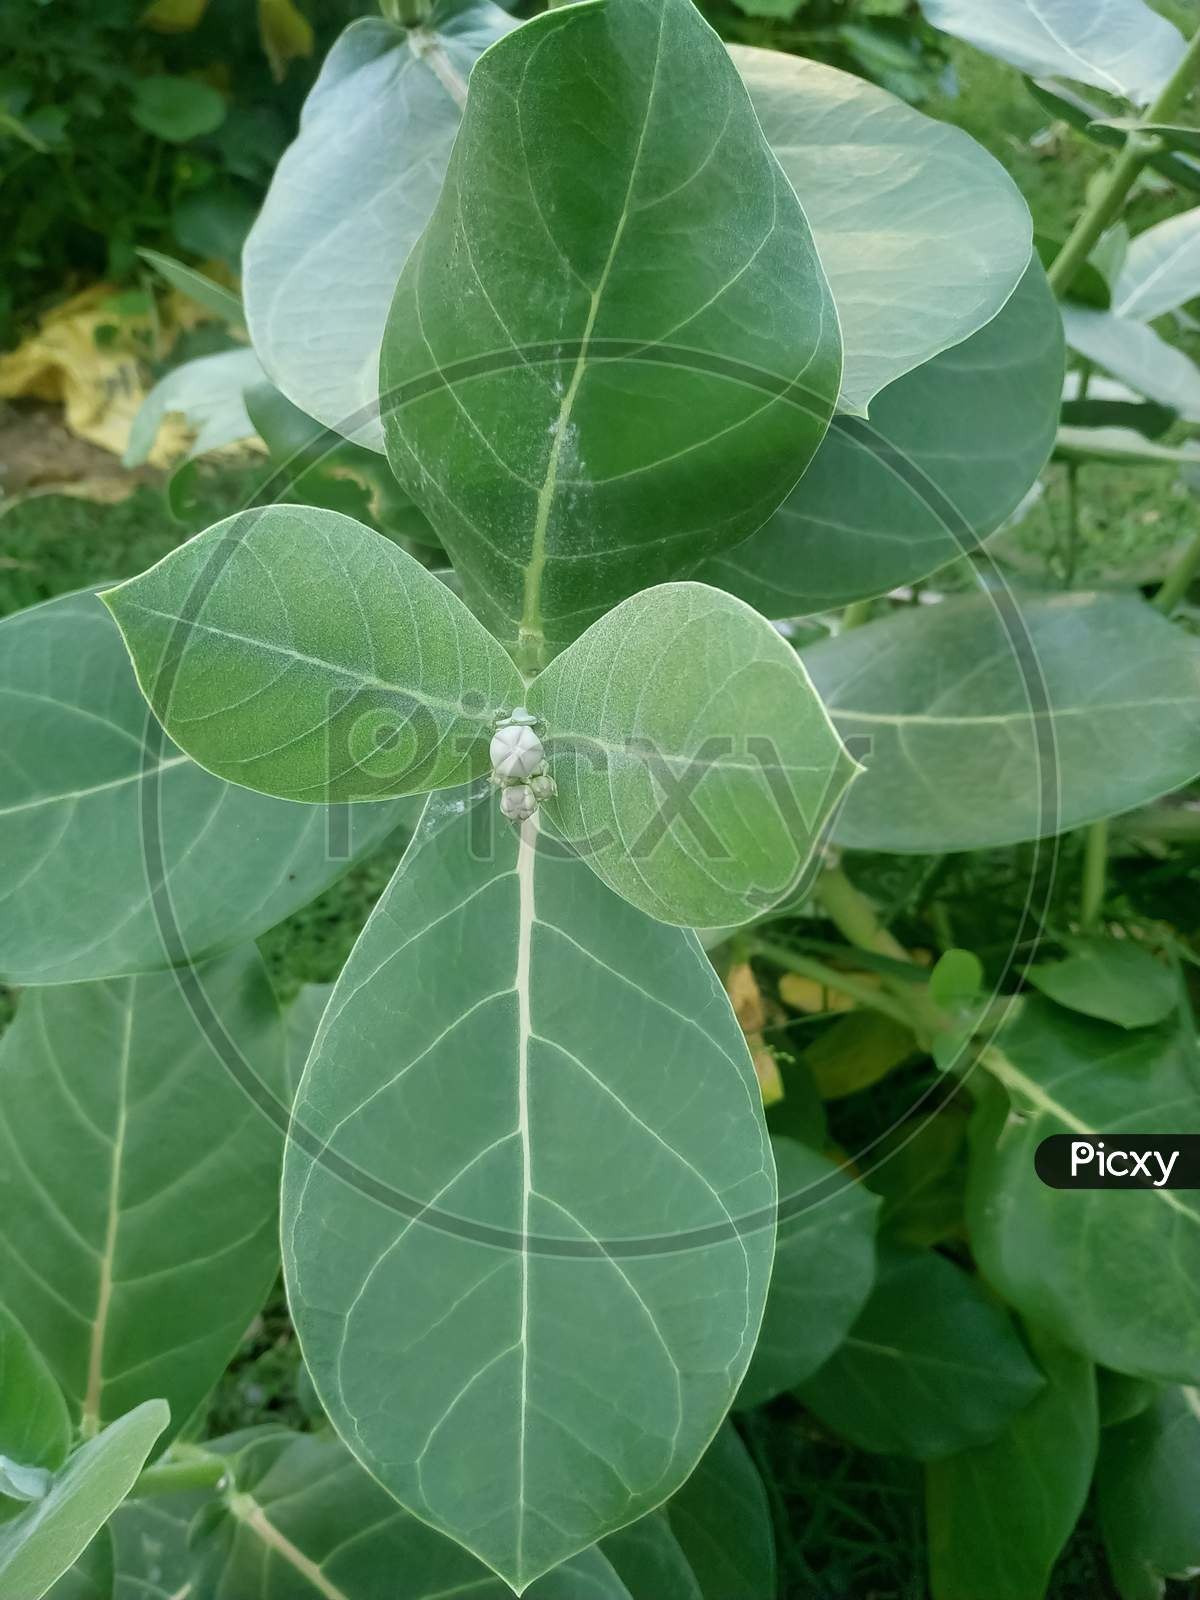 Calotrips Gigantea or Arka Leaf/Leaves (Indian name) Beautiful Green Leaves/Leafs.